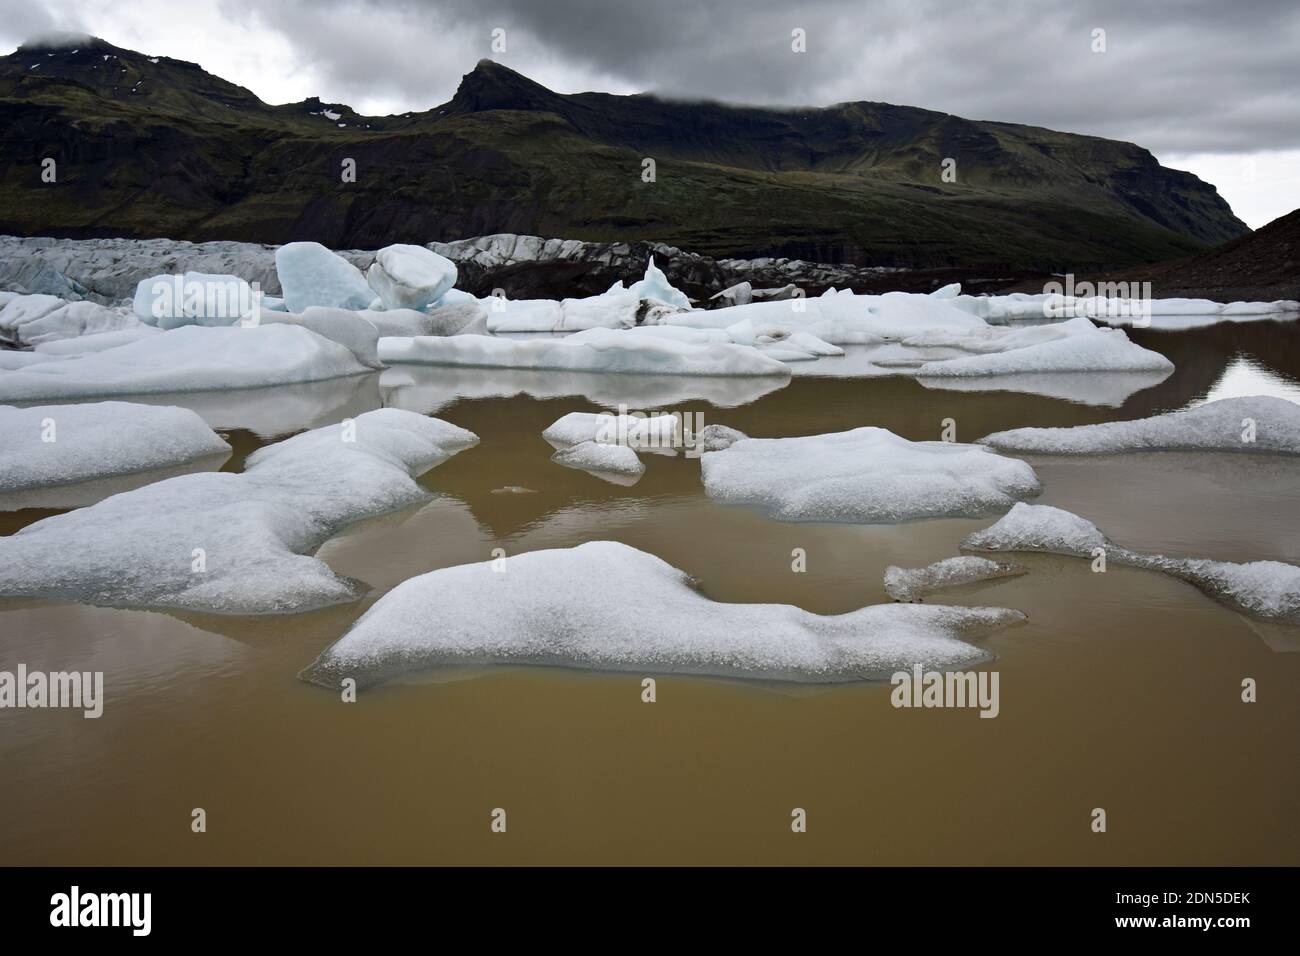 Le glacier de Svínafelljokull s'écoule dans le lagon glaciaire du parc national de Vatnajokull, au sud de l'Islande. Des morceaux de glace flottent dans le lac. Banque D'Images